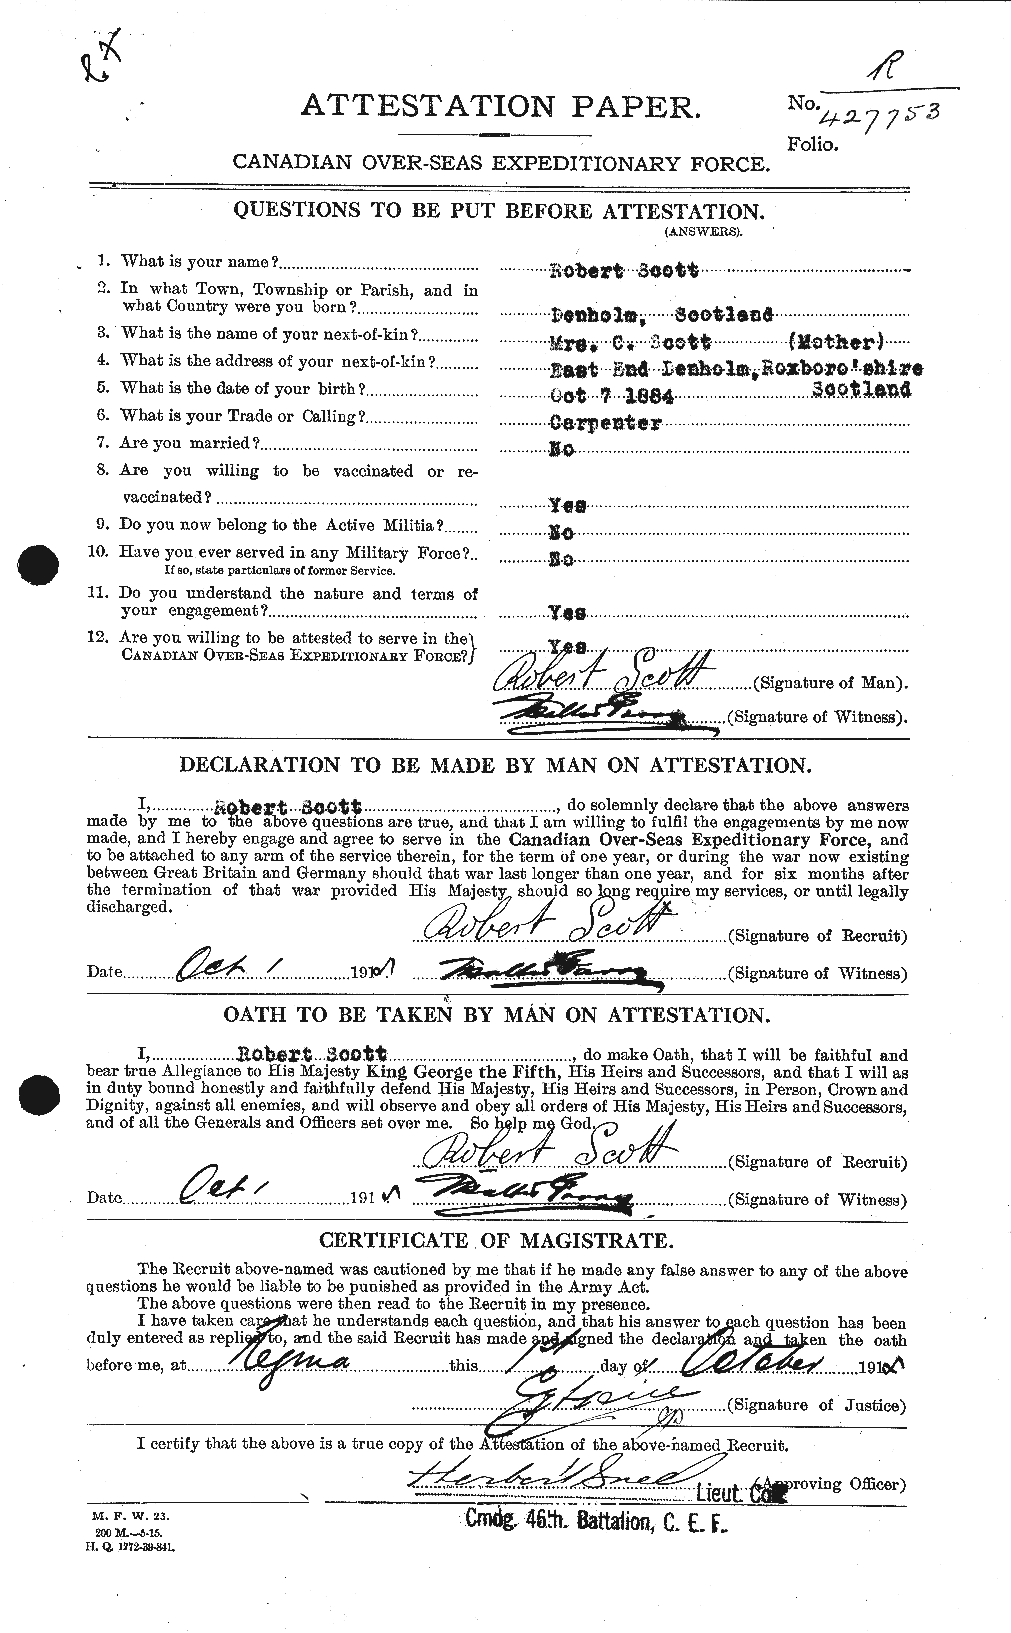 Dossiers du Personnel de la Première Guerre mondiale - CEC 089234a